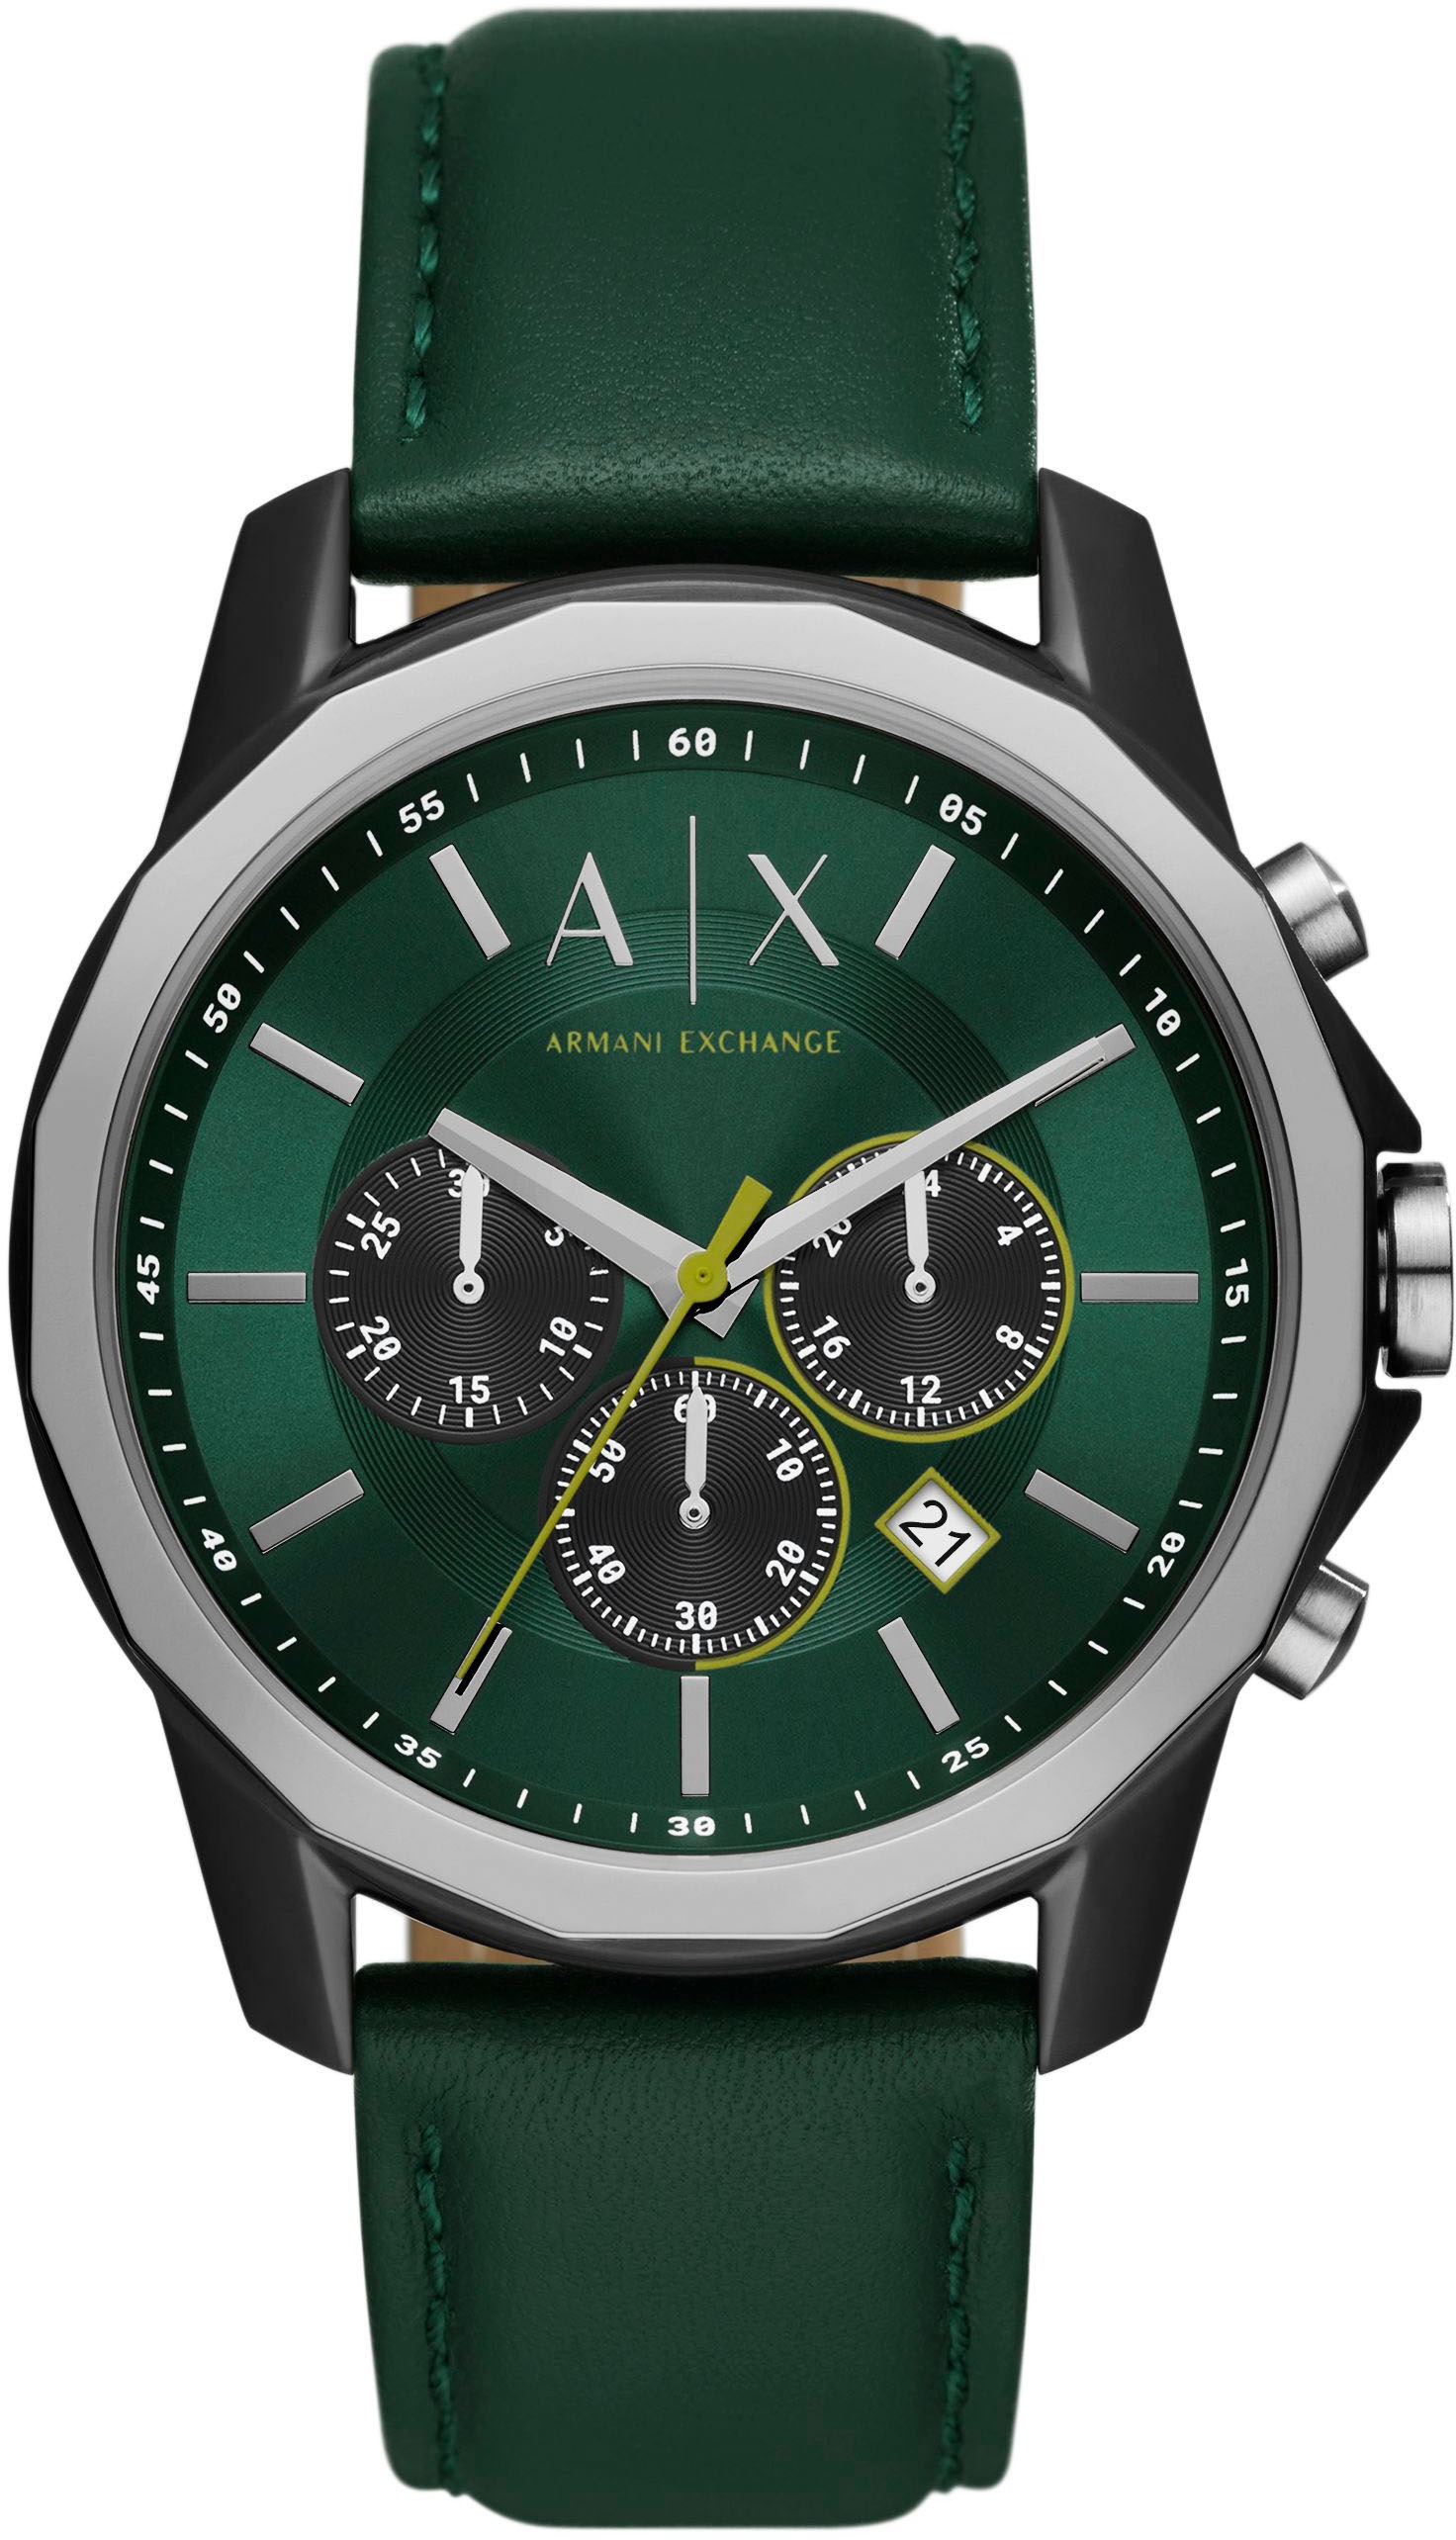 ARMANI EXCHANGE Chronograph »AX1741« online kaufen | BAUR